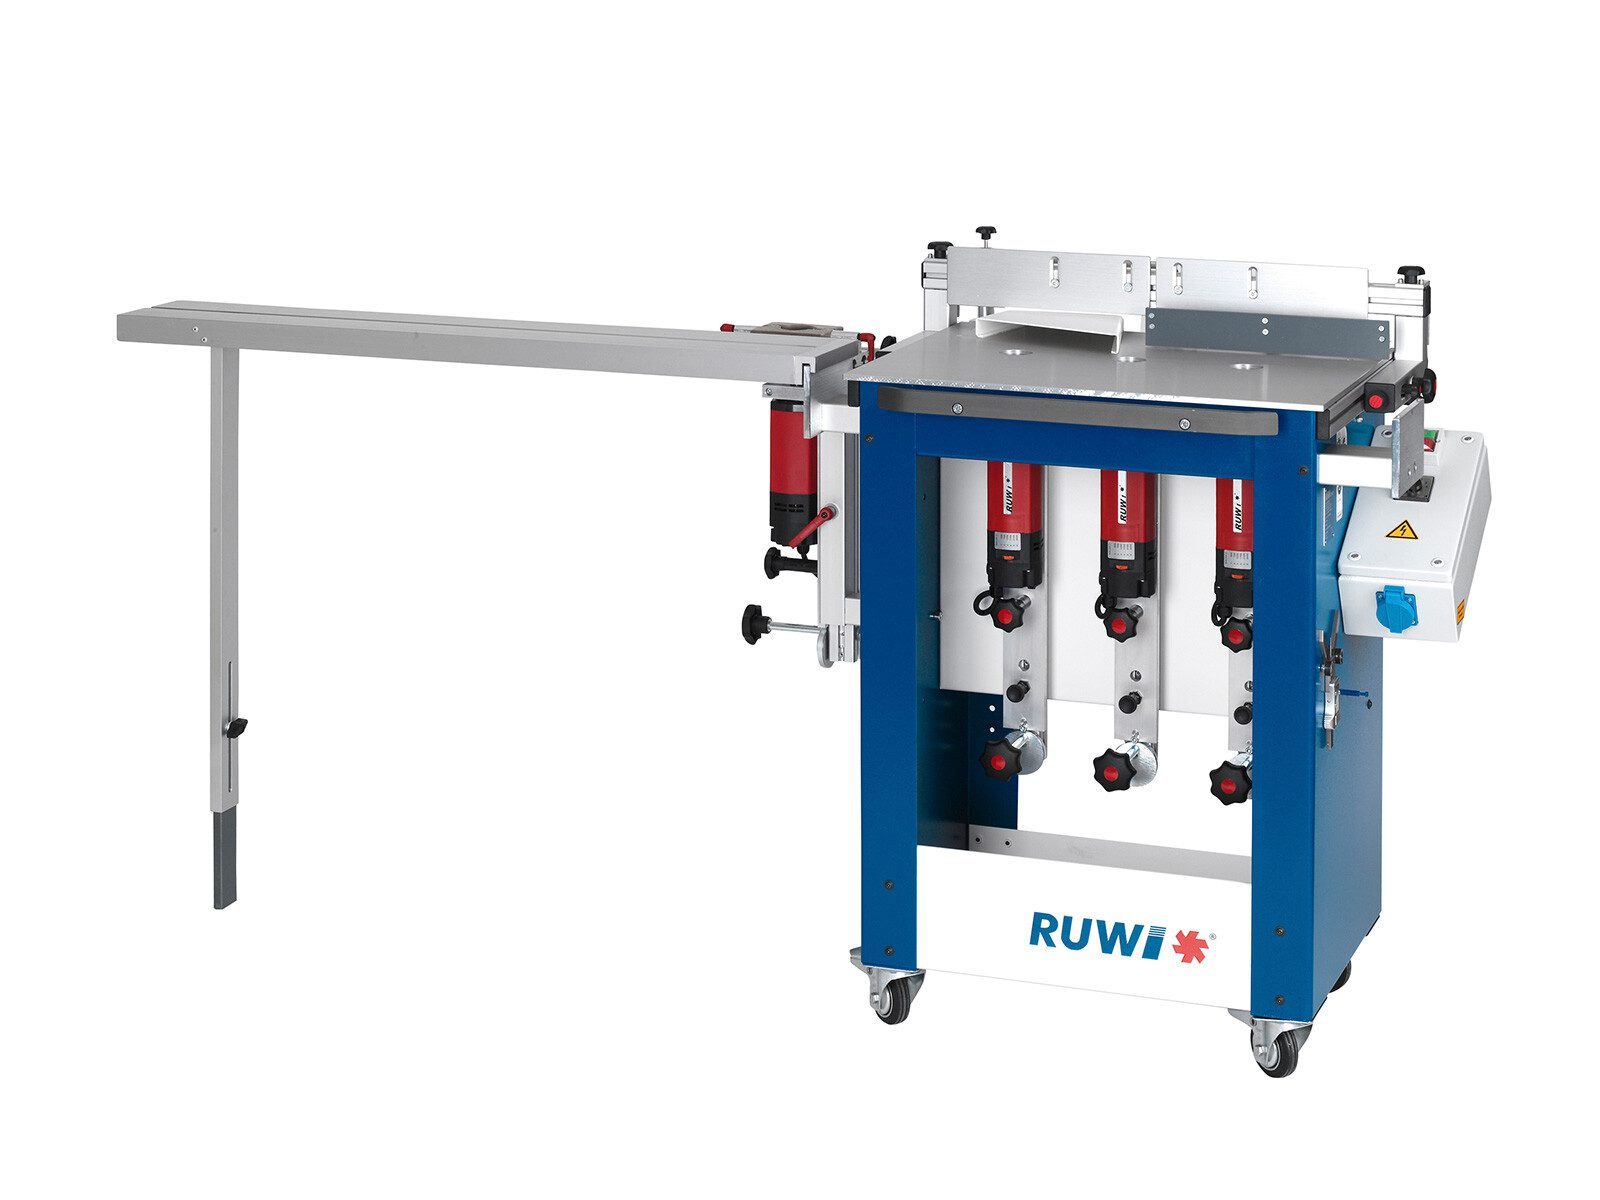 Antriebseinheit Nachrüstsatz mit Feineinstellung für RUWI Tischfräse kaufen